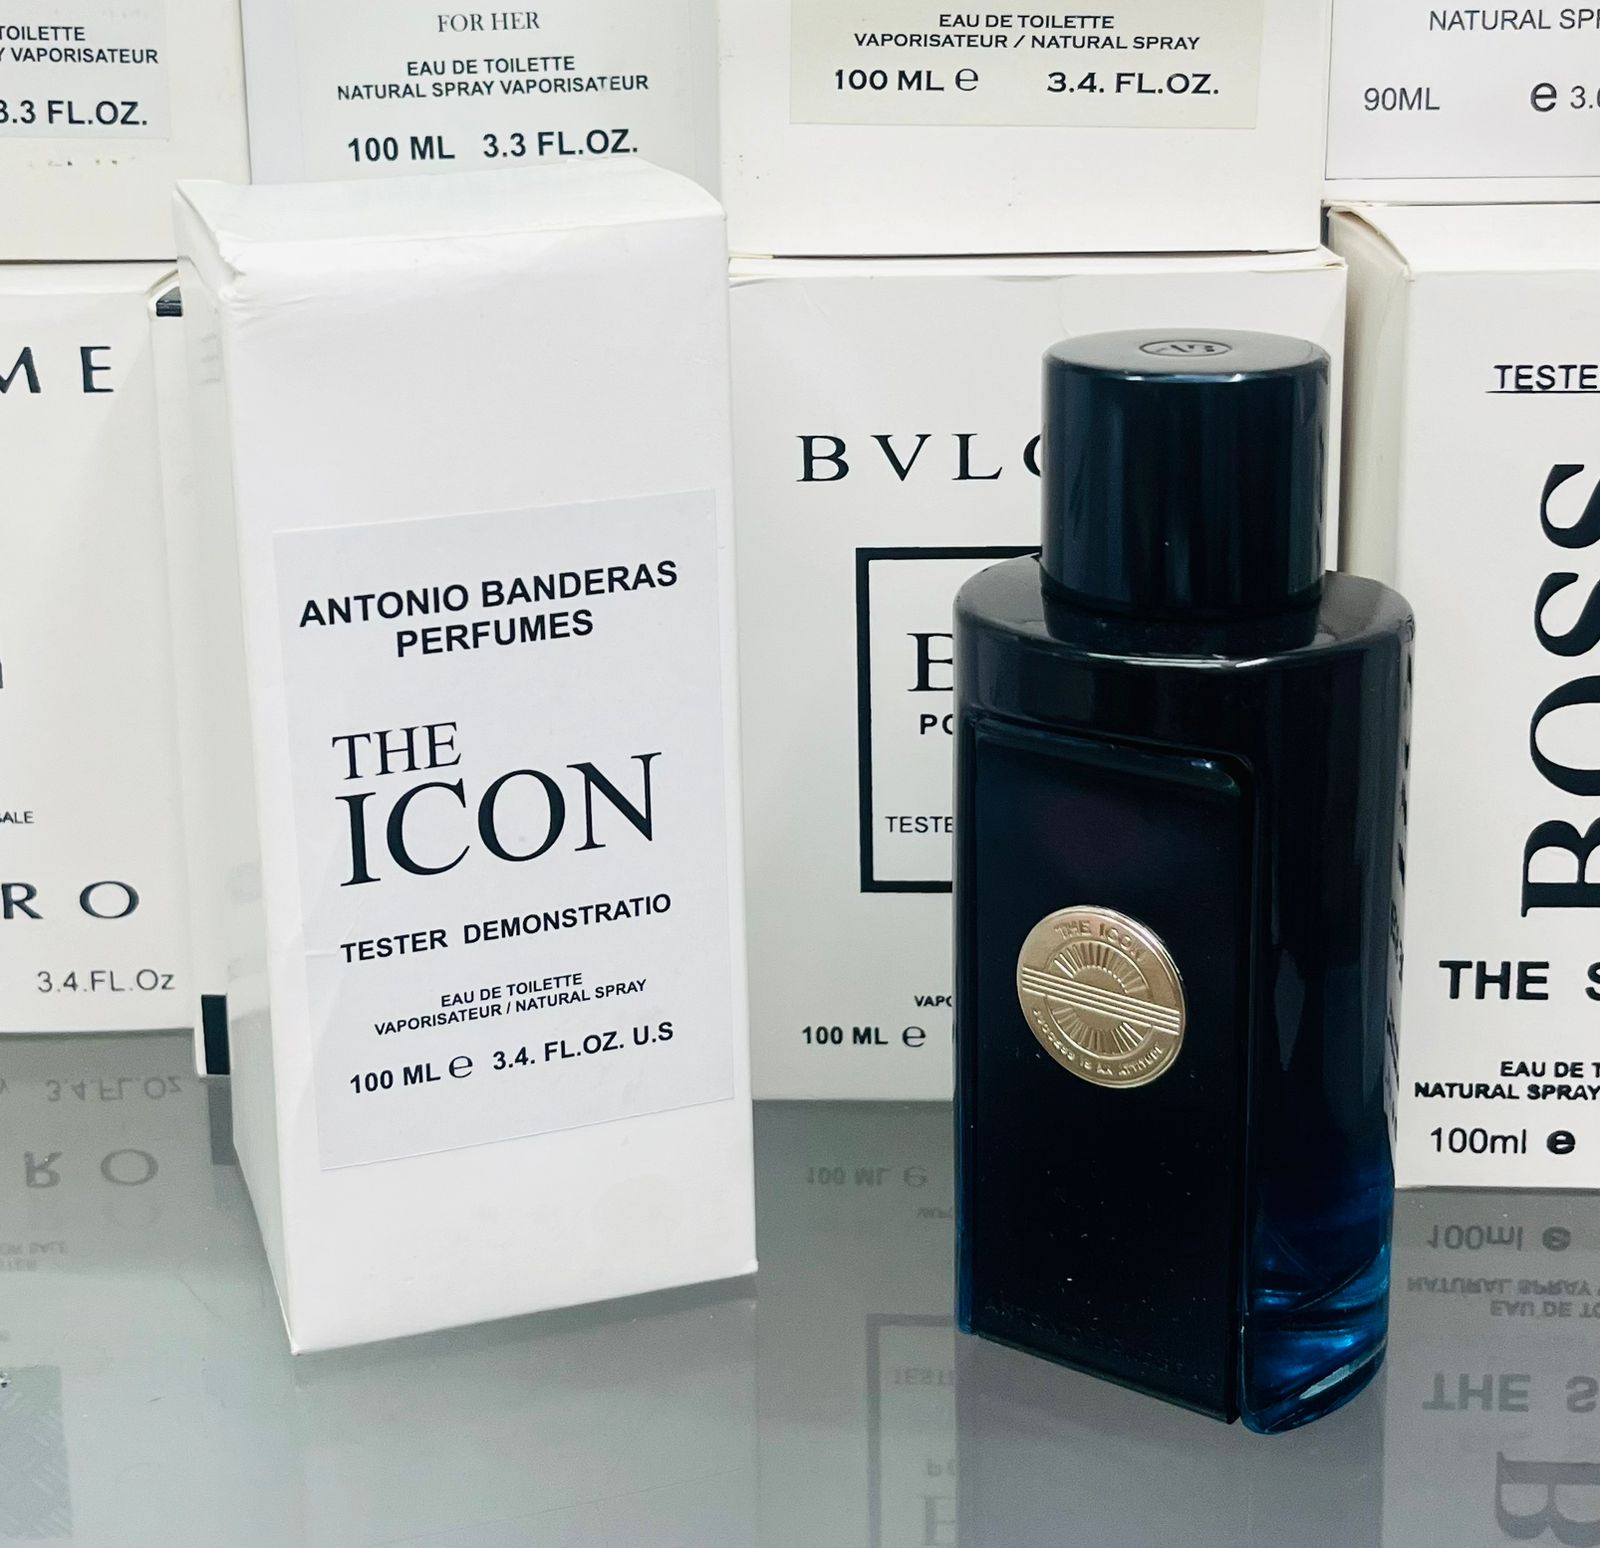 Antonio Banderas The Icon Perfumes